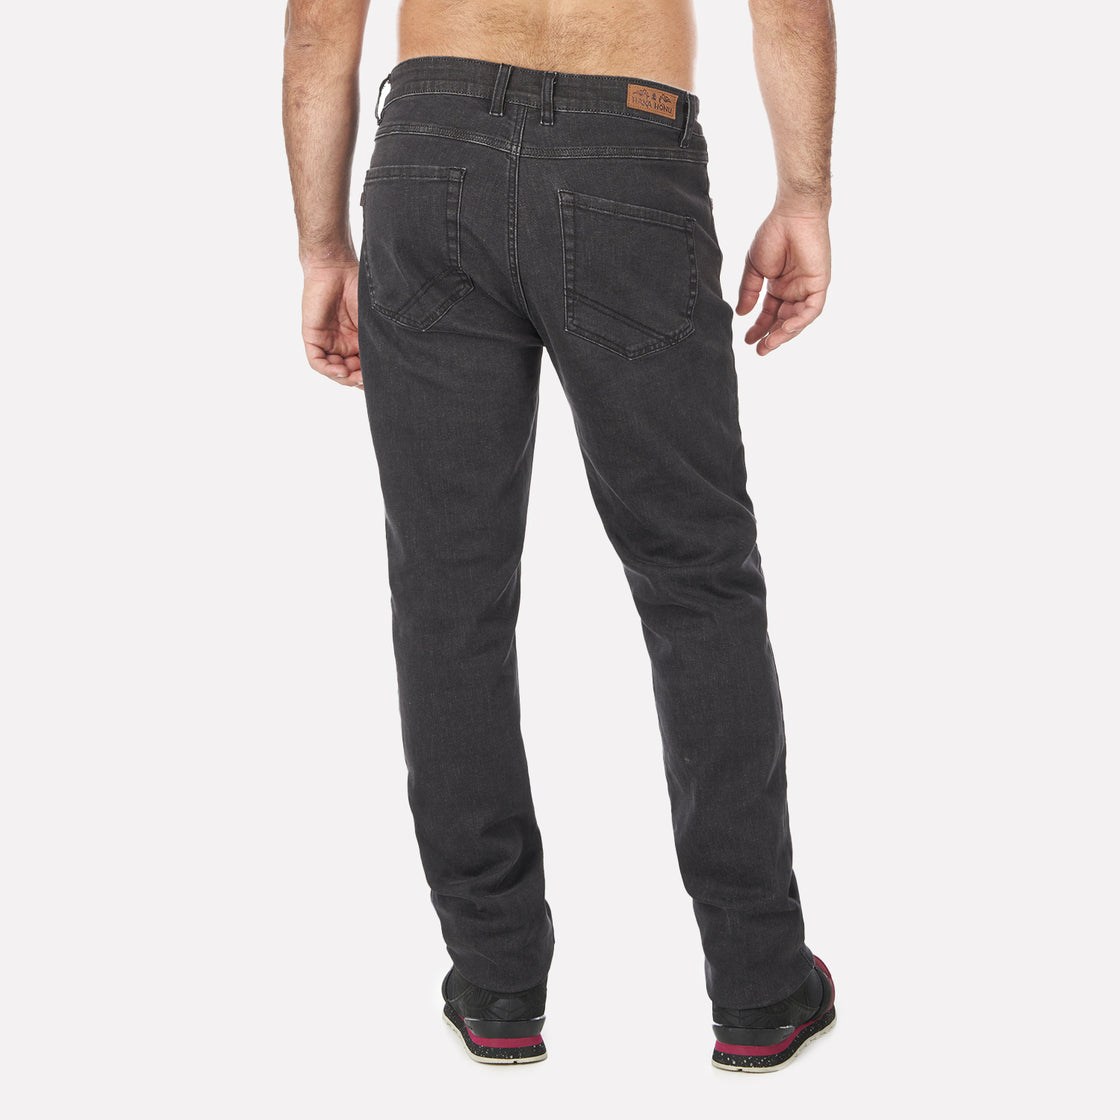 Pantalon Hombre Jeans con Gin Negro Haka Honu